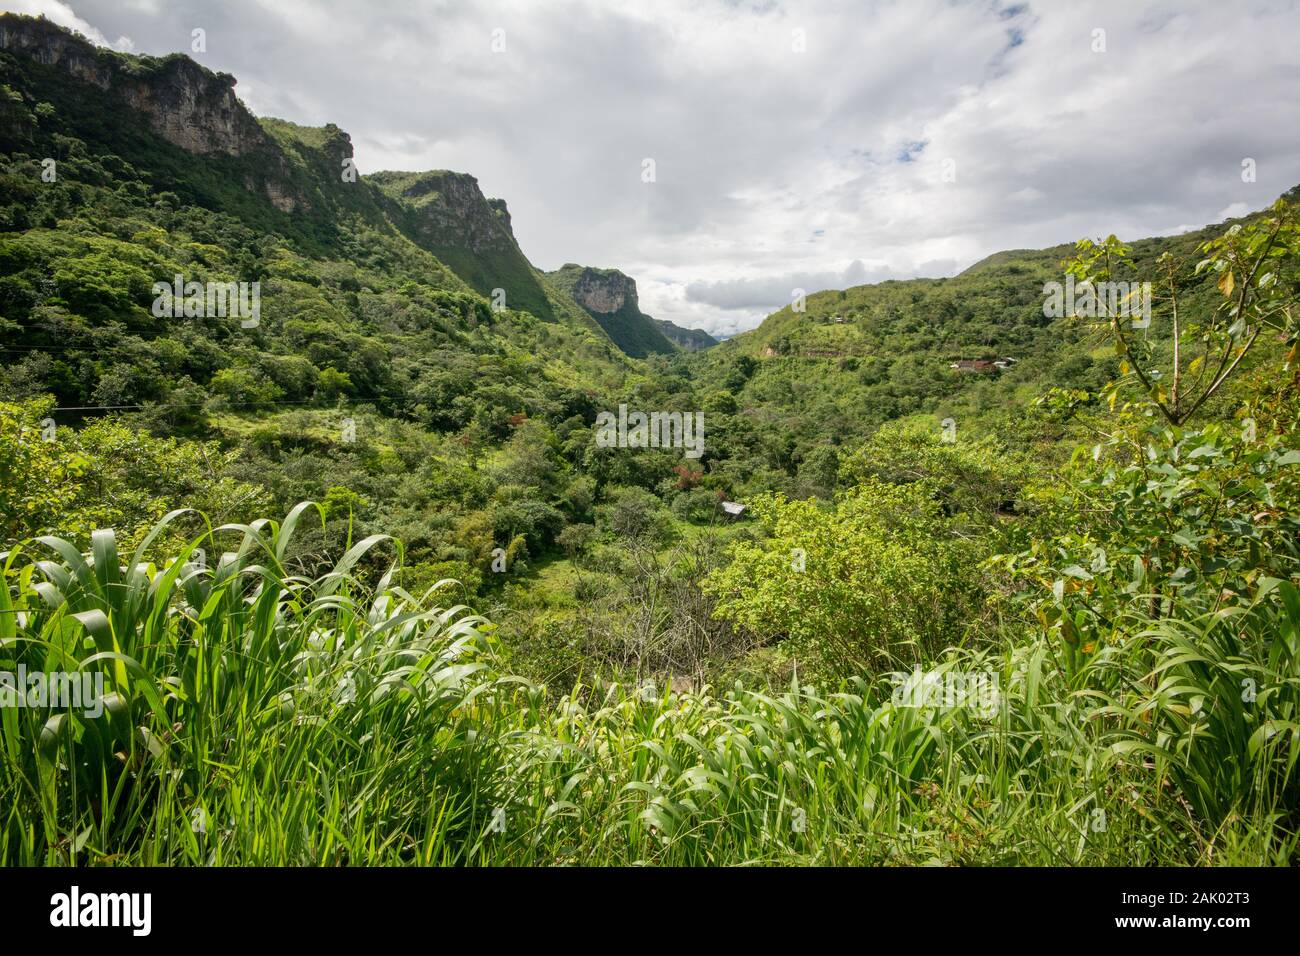 Lush jungle landscape of the Rodriguez de Mendoza region of Amazonas in northern Peru Stock Photo